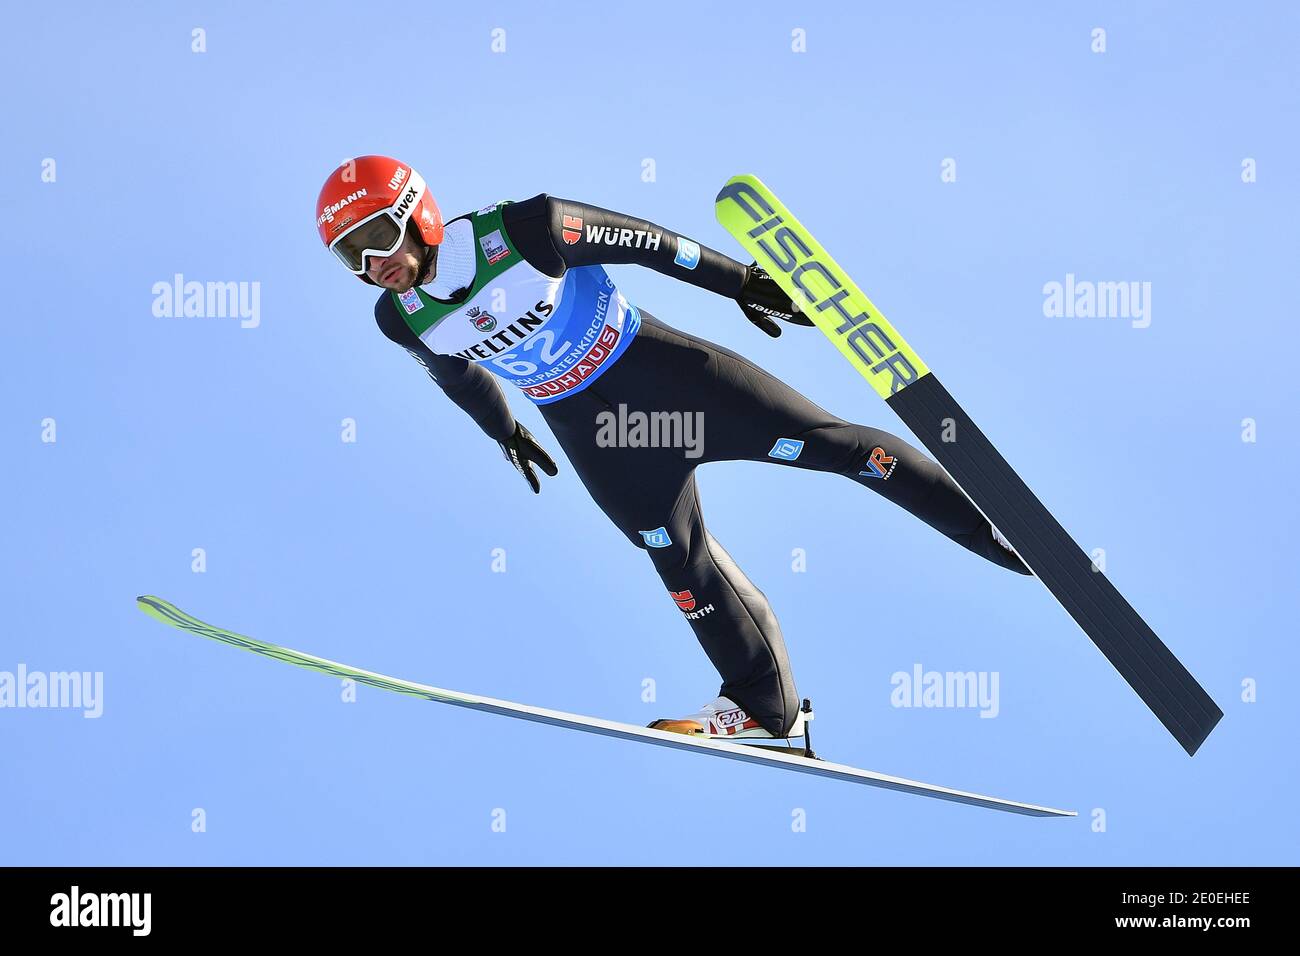 Markus EISENBICHLER (GER), jump, action. Ski jumping, 69th International Four Hills Tournament 2020/21. Qualification for the New Year's event in Garmisch Partenkirchen on December 31, 2020. | usage worldwide Stock Photo